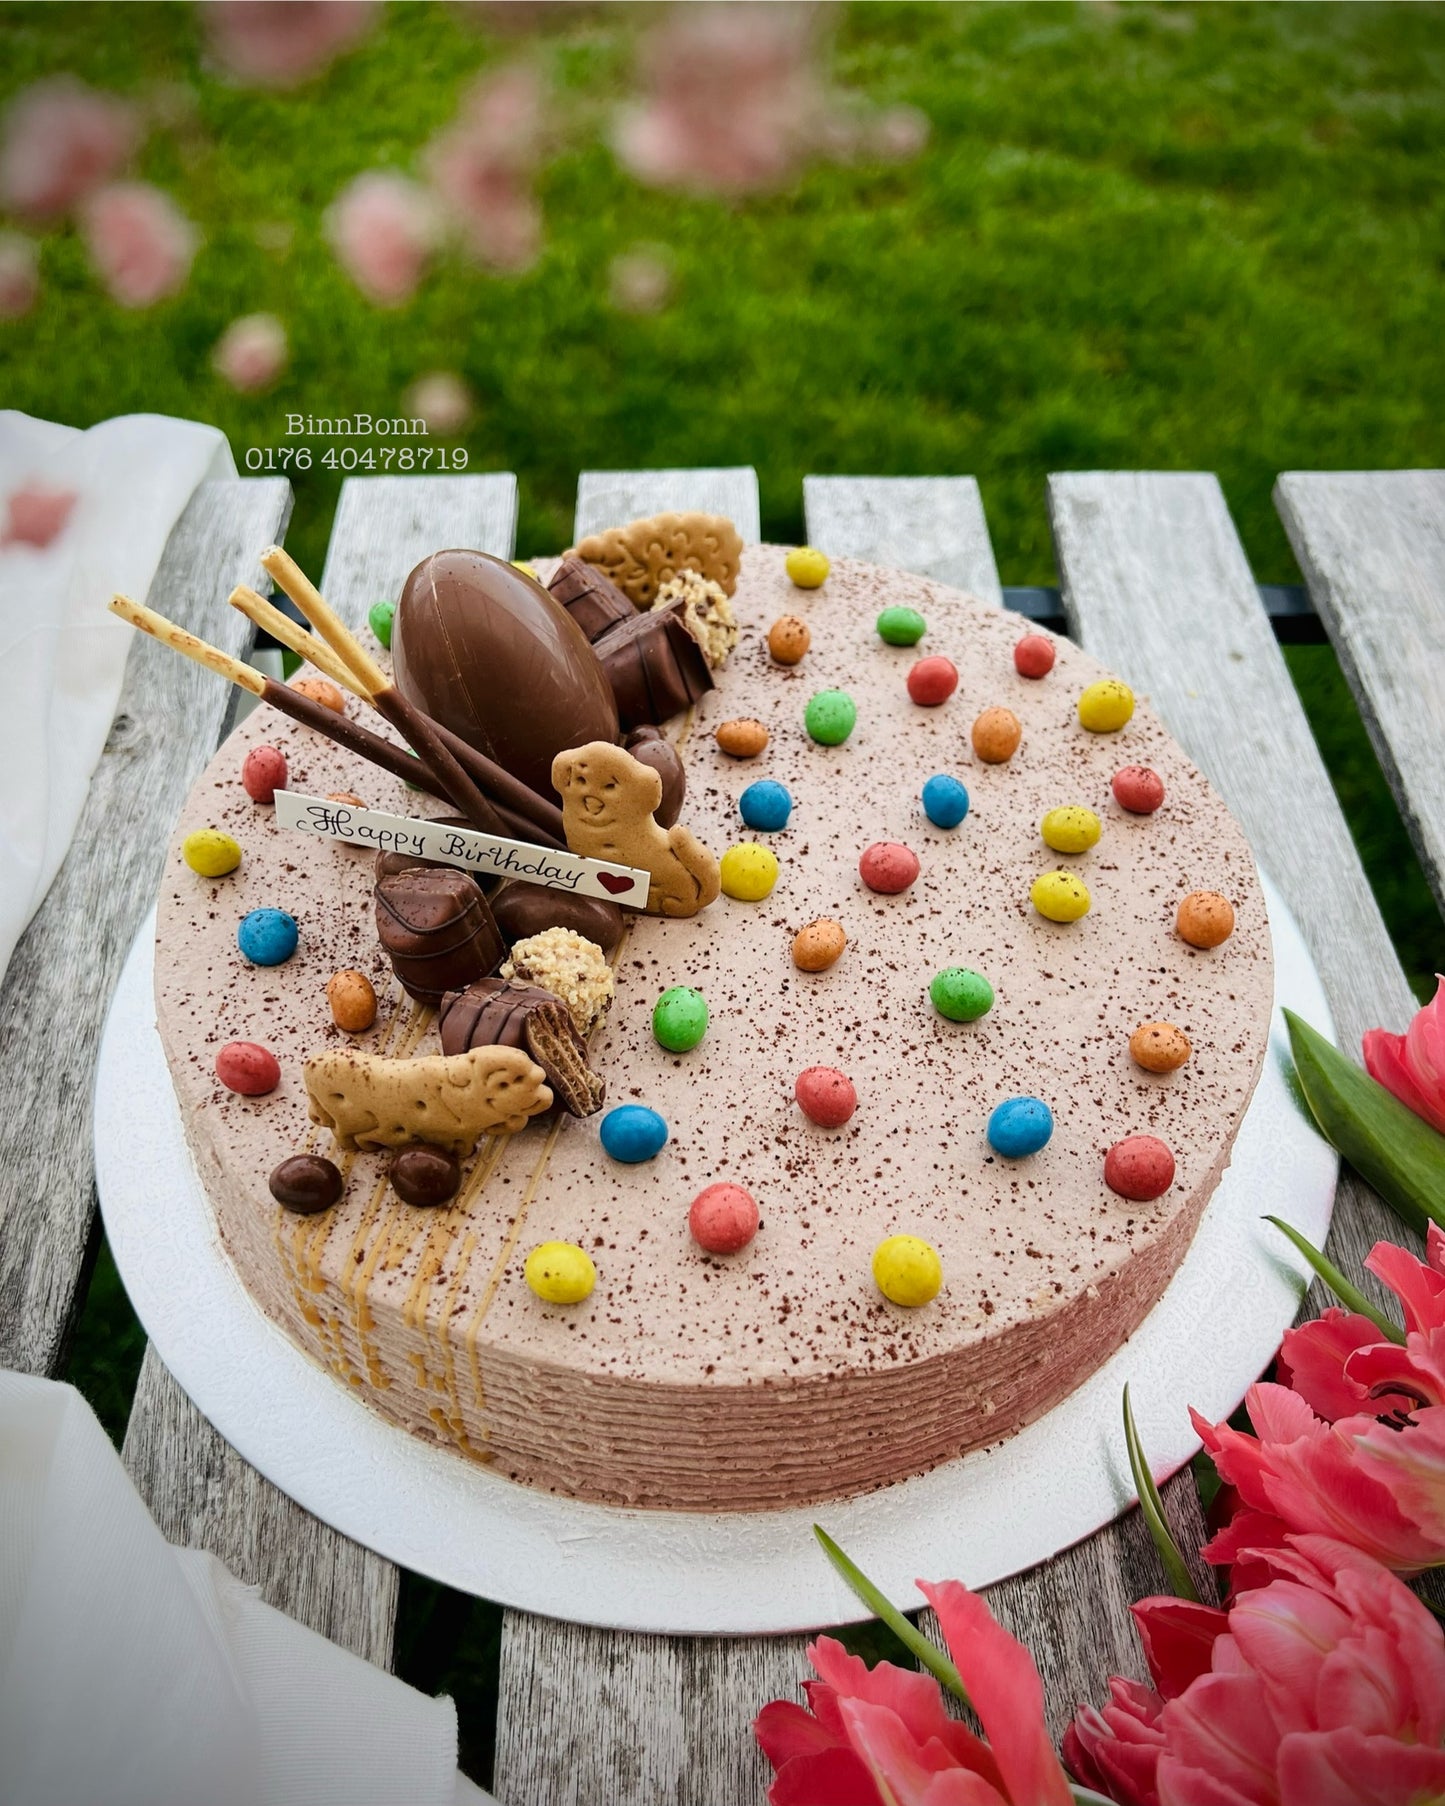 54. Torte "Easter time" zum Kindergeburtstag mit Überraschungsei und bunten M&M's 26 cm